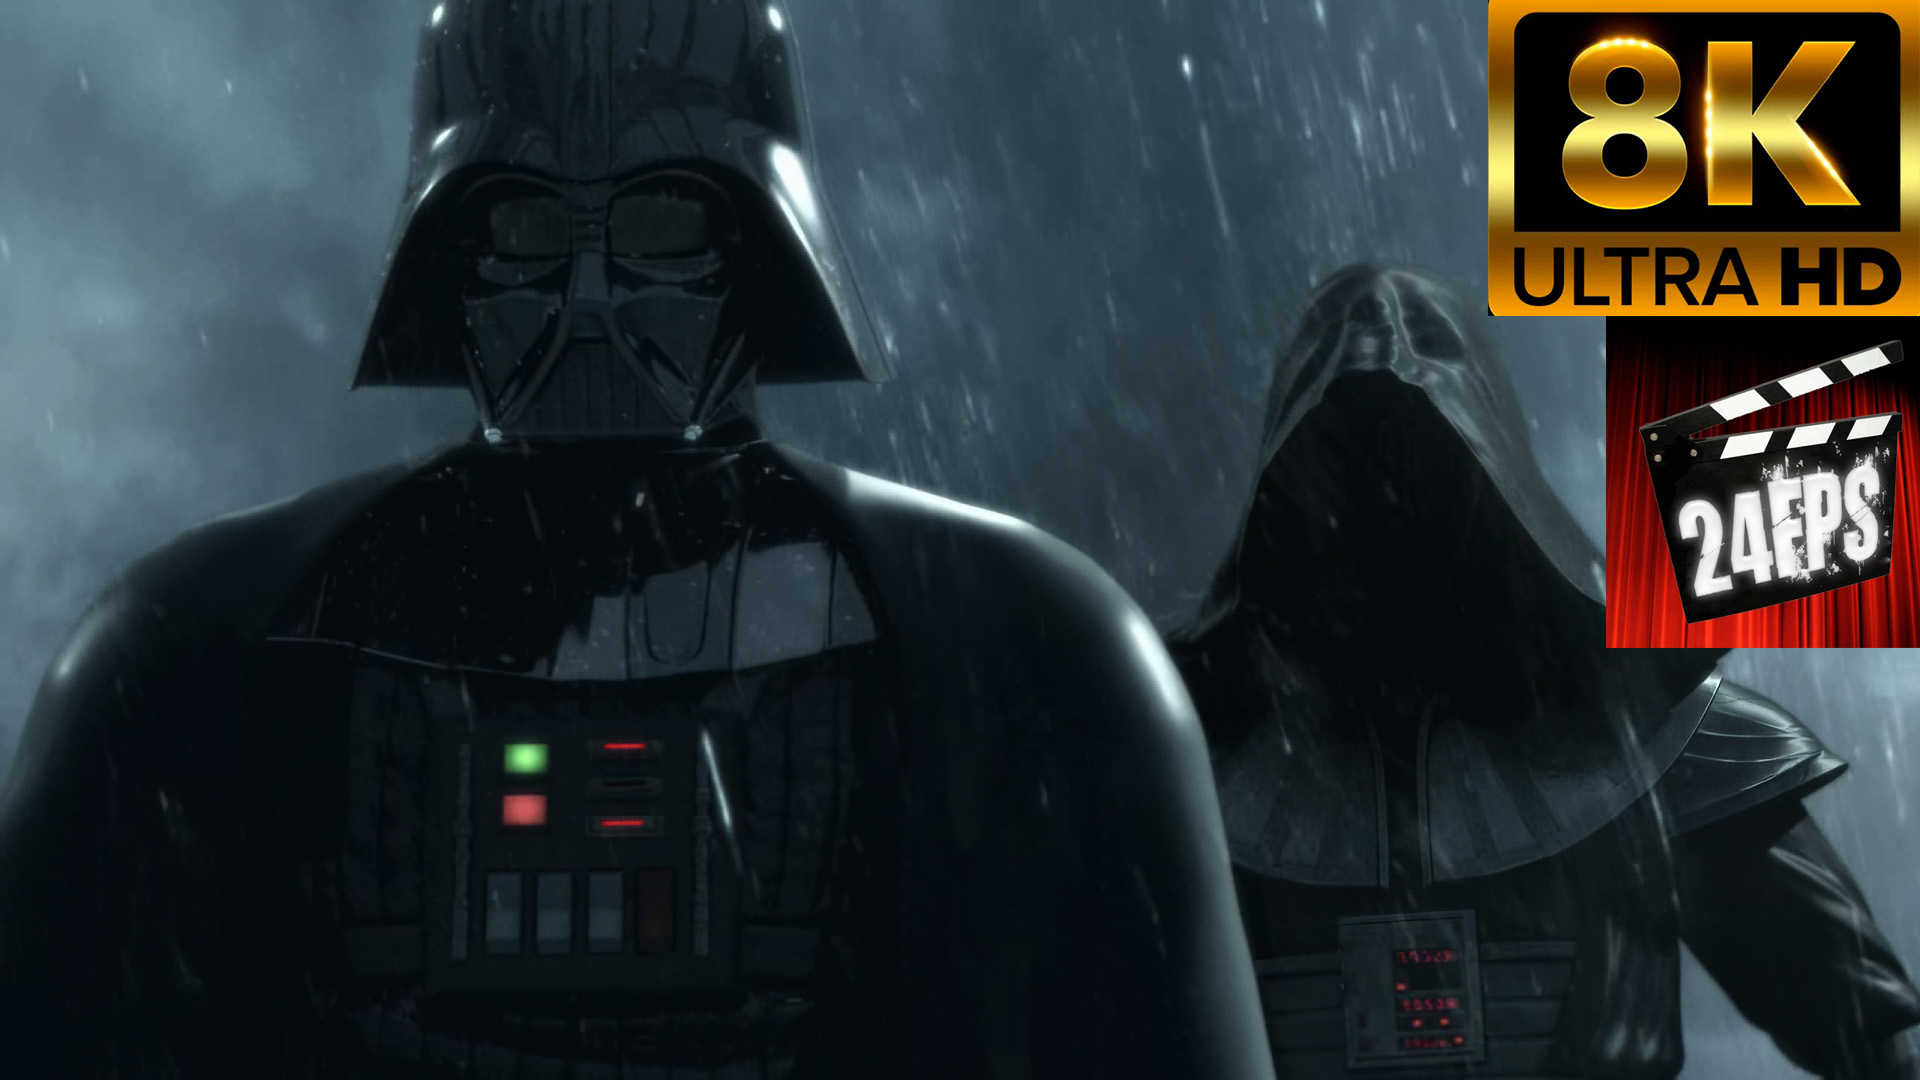 Star Wars The Force Unleashed 2 - Bad Ending (Remastered 8K)